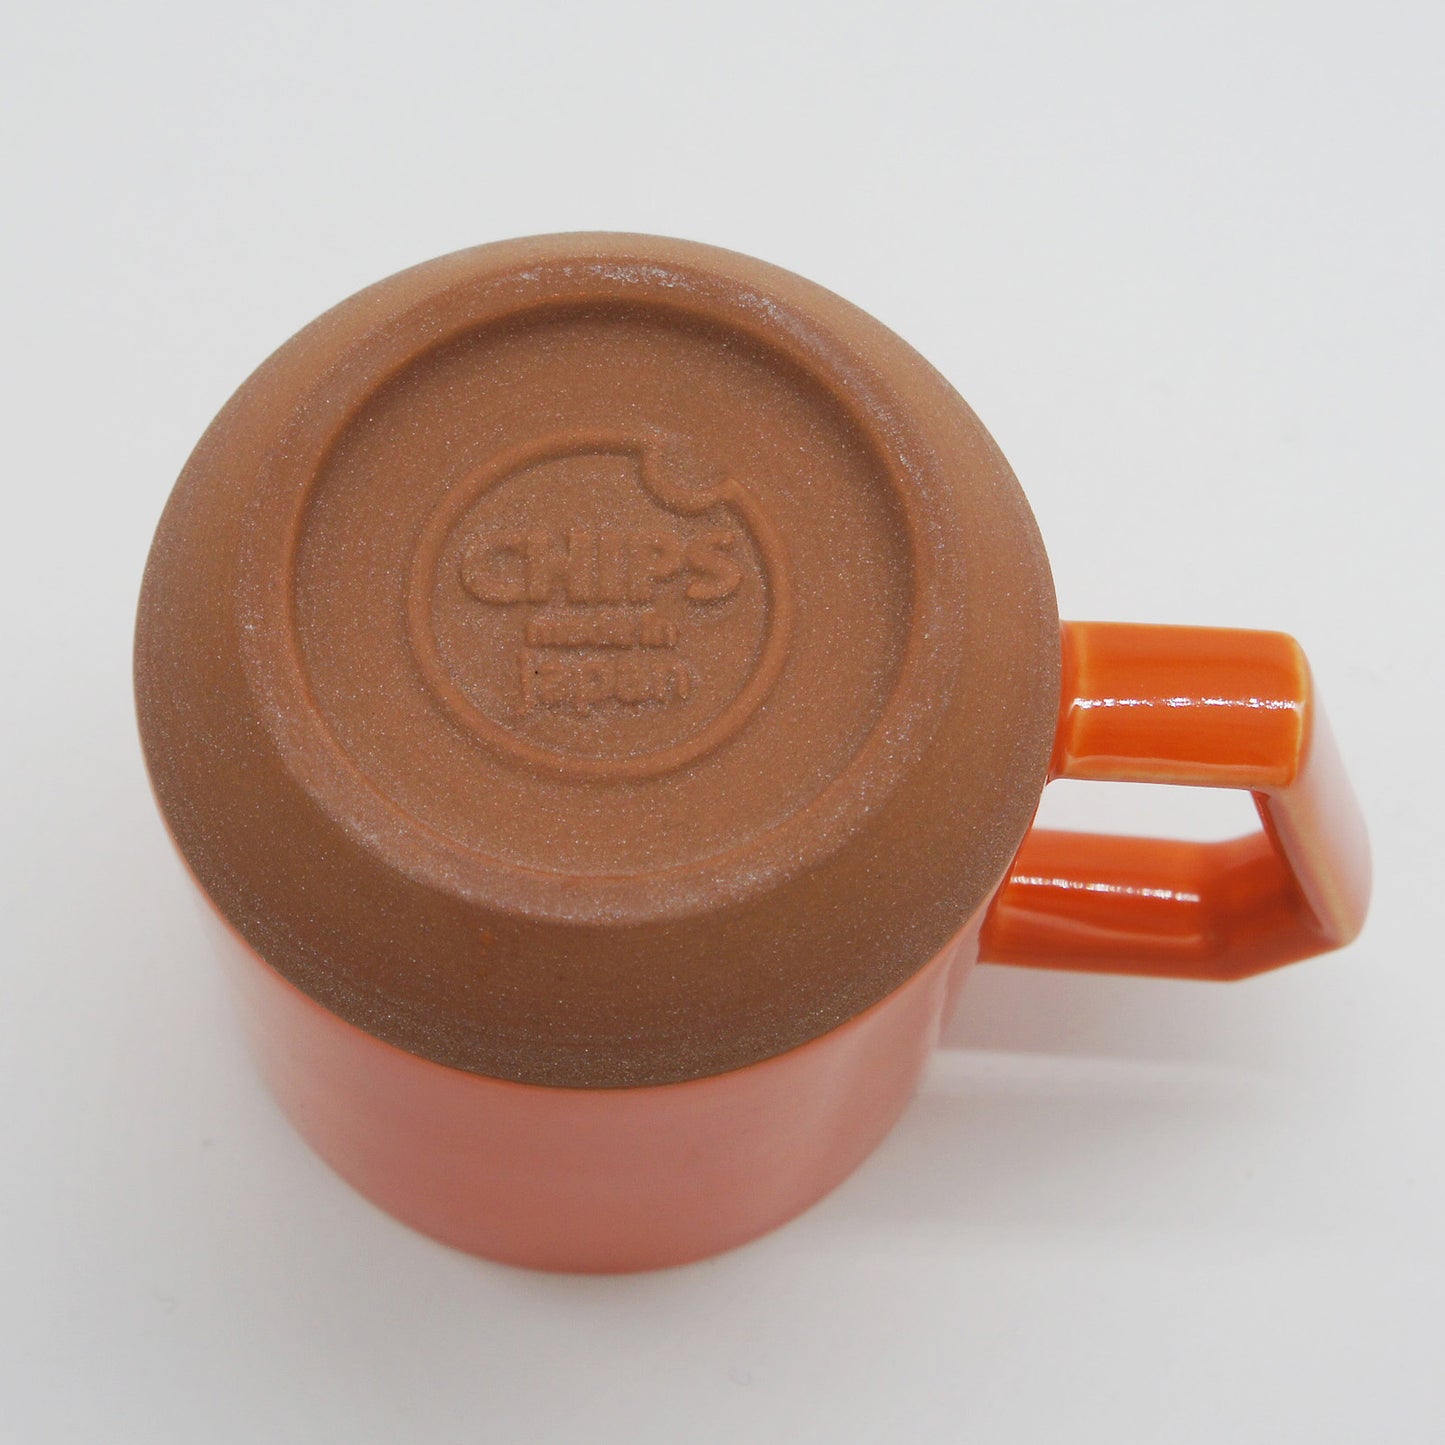 CHIPS Mug - Solid Orange